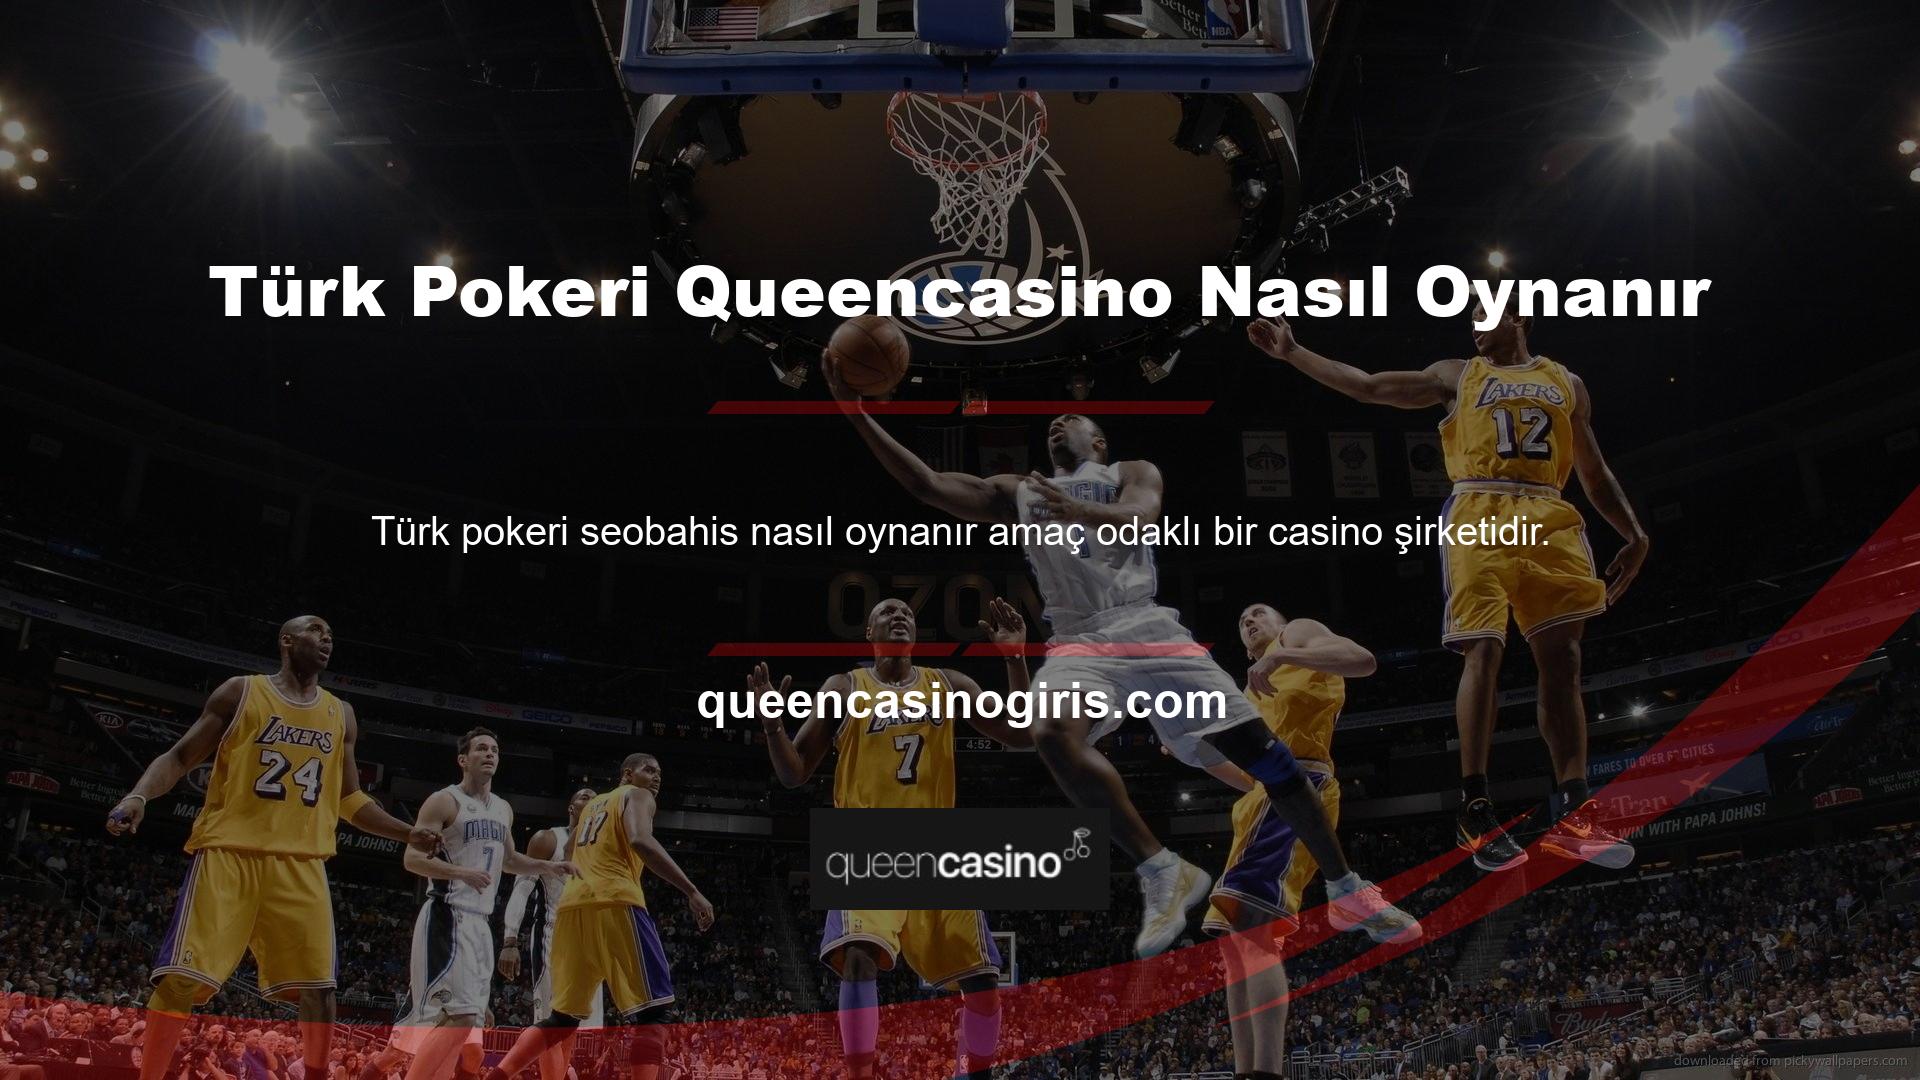 Türk Pokeri nasıl oynanır Oyuncular arasında popüler bir casino oyunu olan Queencasino, aynı zamanda Türk Pokeri oynama fırsatı da sunuyor